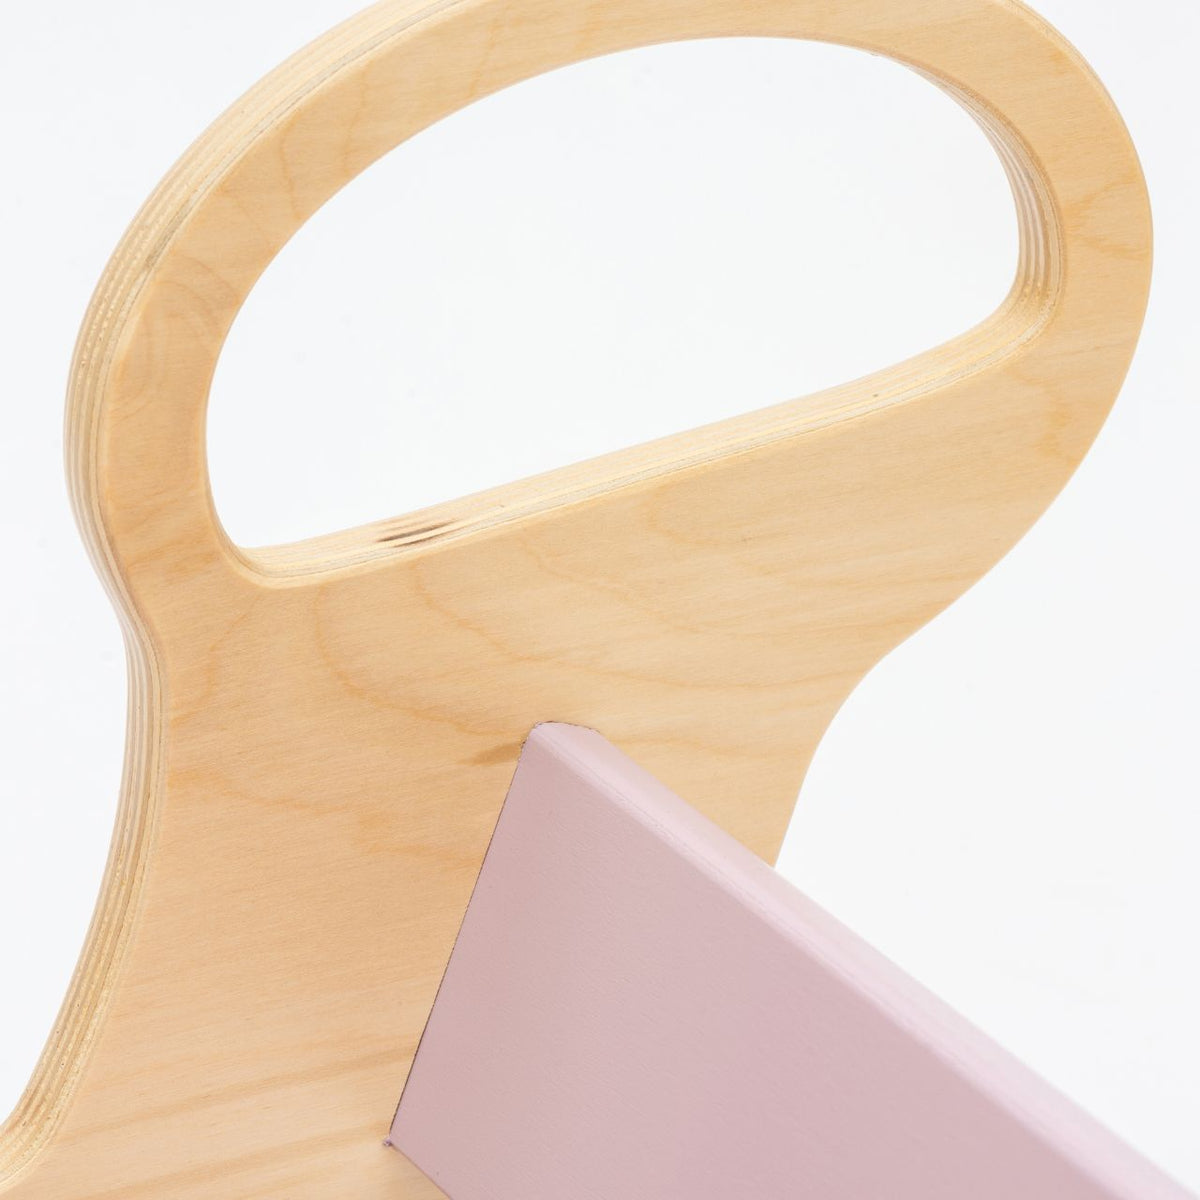 Conjunto - baloiço / quadro de dupla face / cadeira - cores pastel